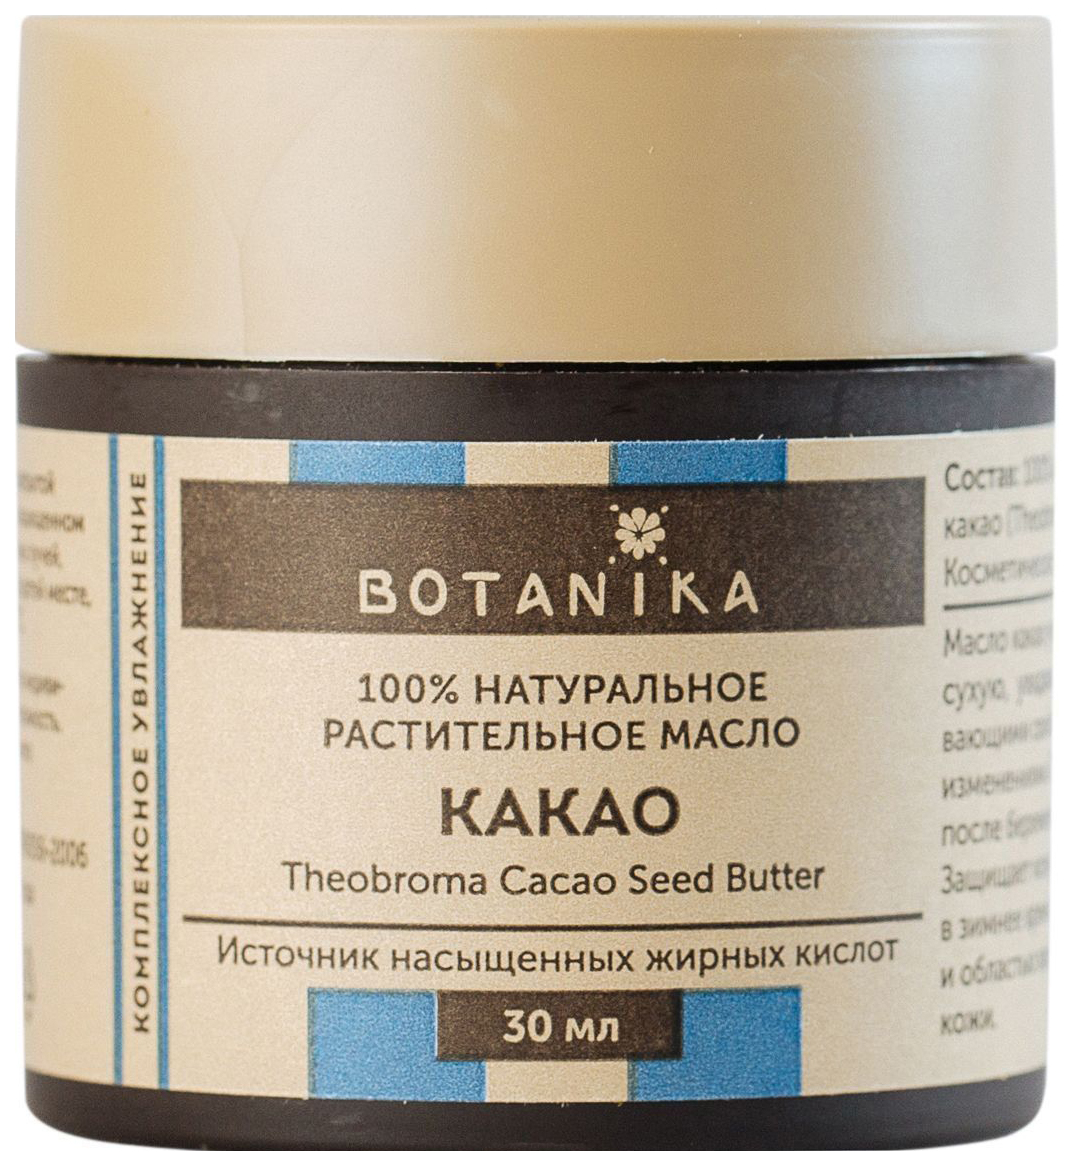 Масло для тела Botanika Жирное масло Какао 30 мл эфирное масло botanika розмарин лекарственный 100% натуральное 10 мл